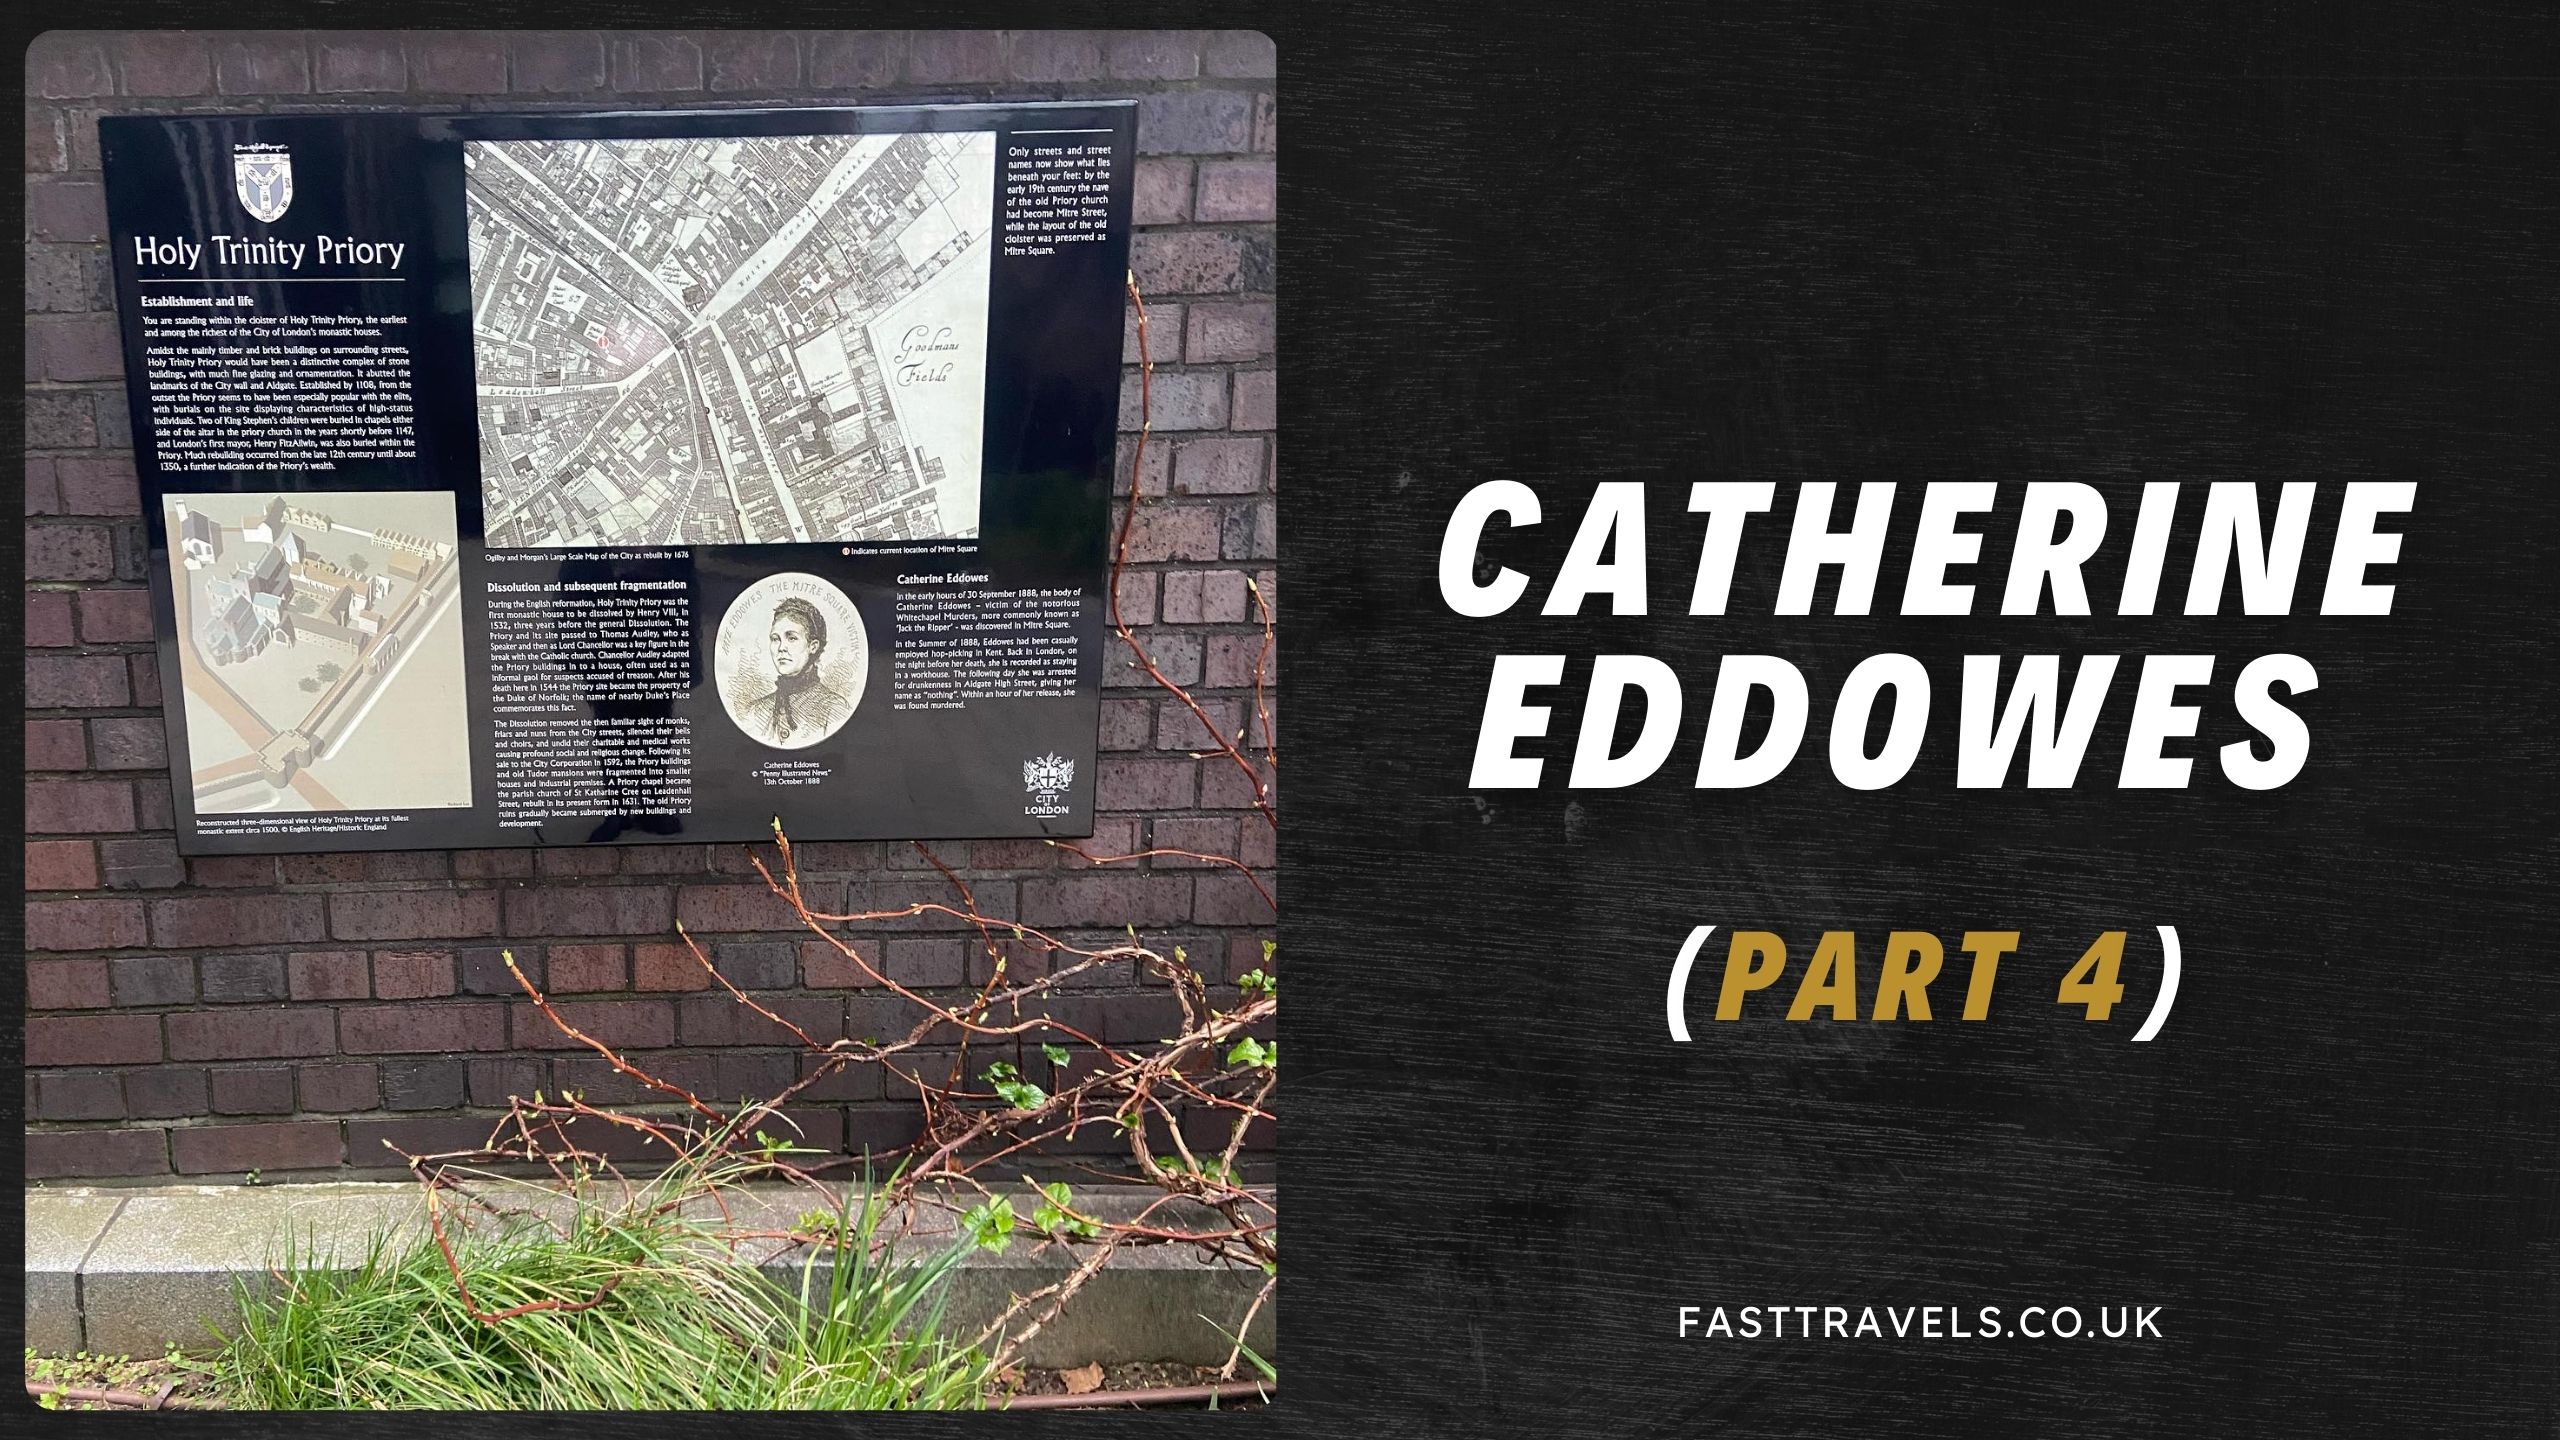 Catherine Eddowes